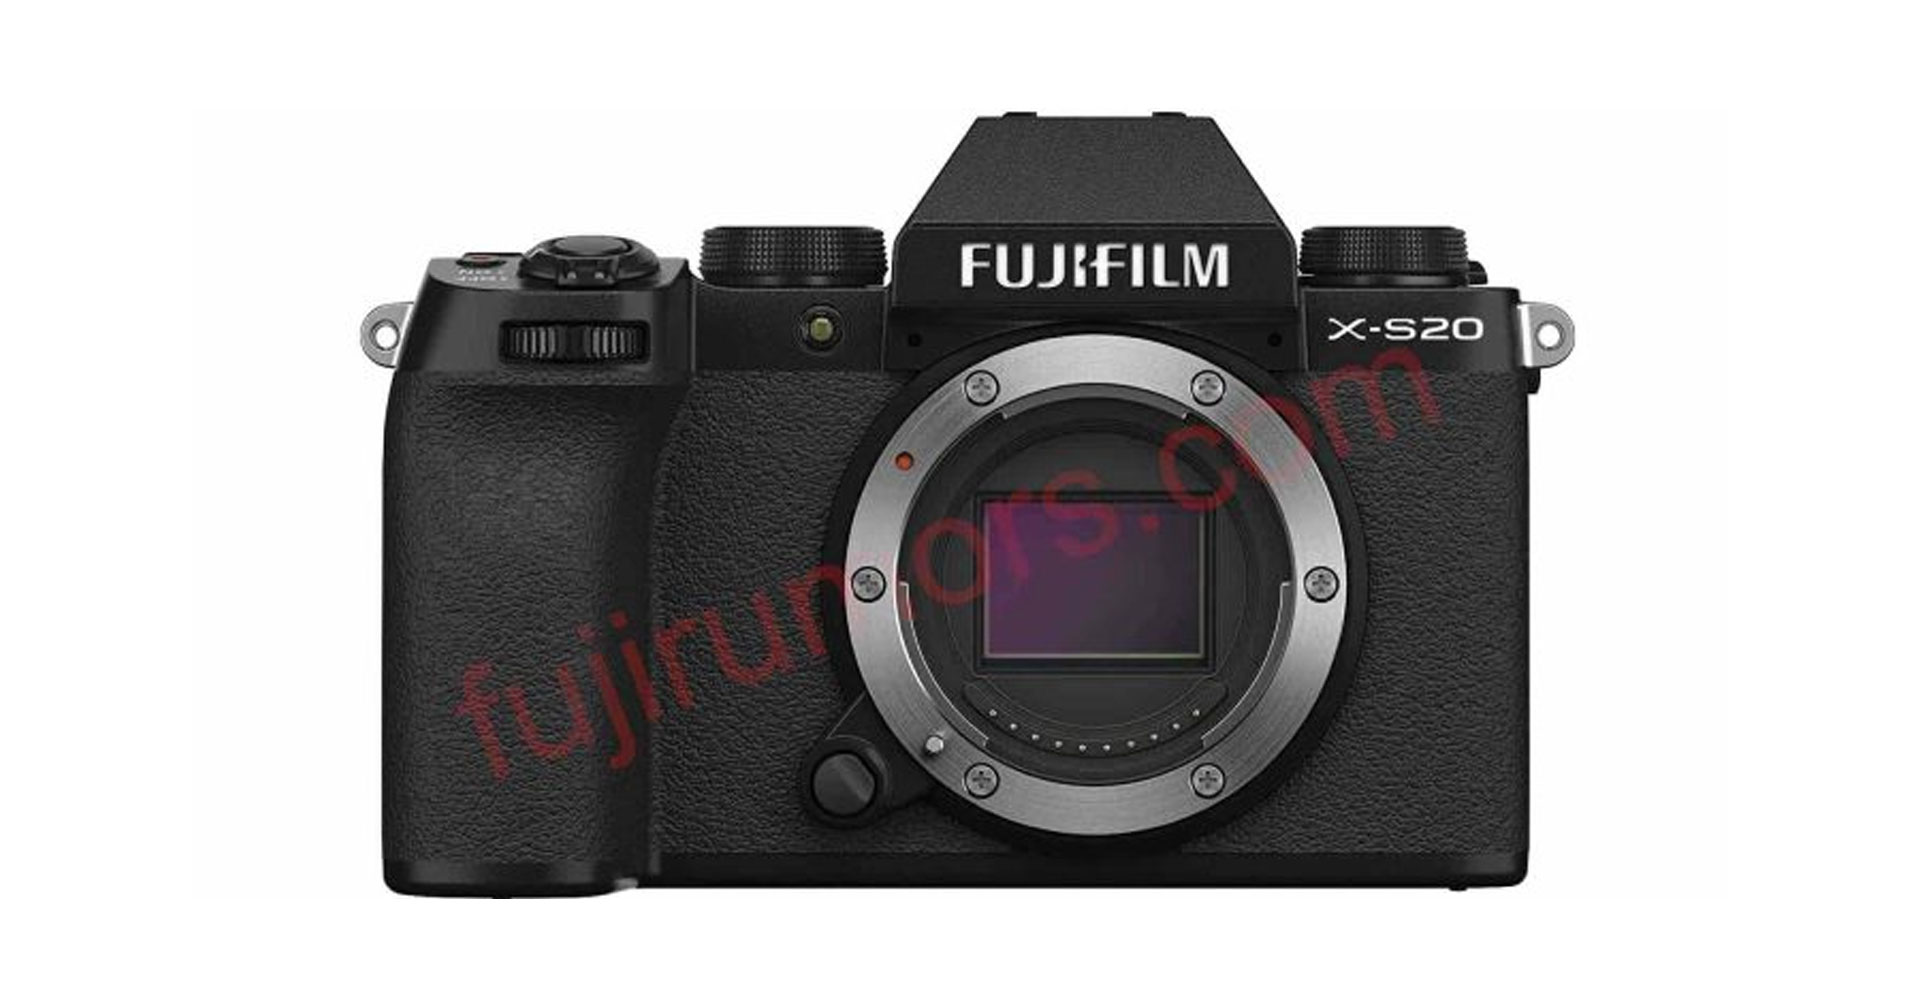 หลุดเซนเซอร์ FUJIFILM X-S20 กล้องมิเรอร์เลส X-Series ระดับ Mid-Range รุ่นใหม่